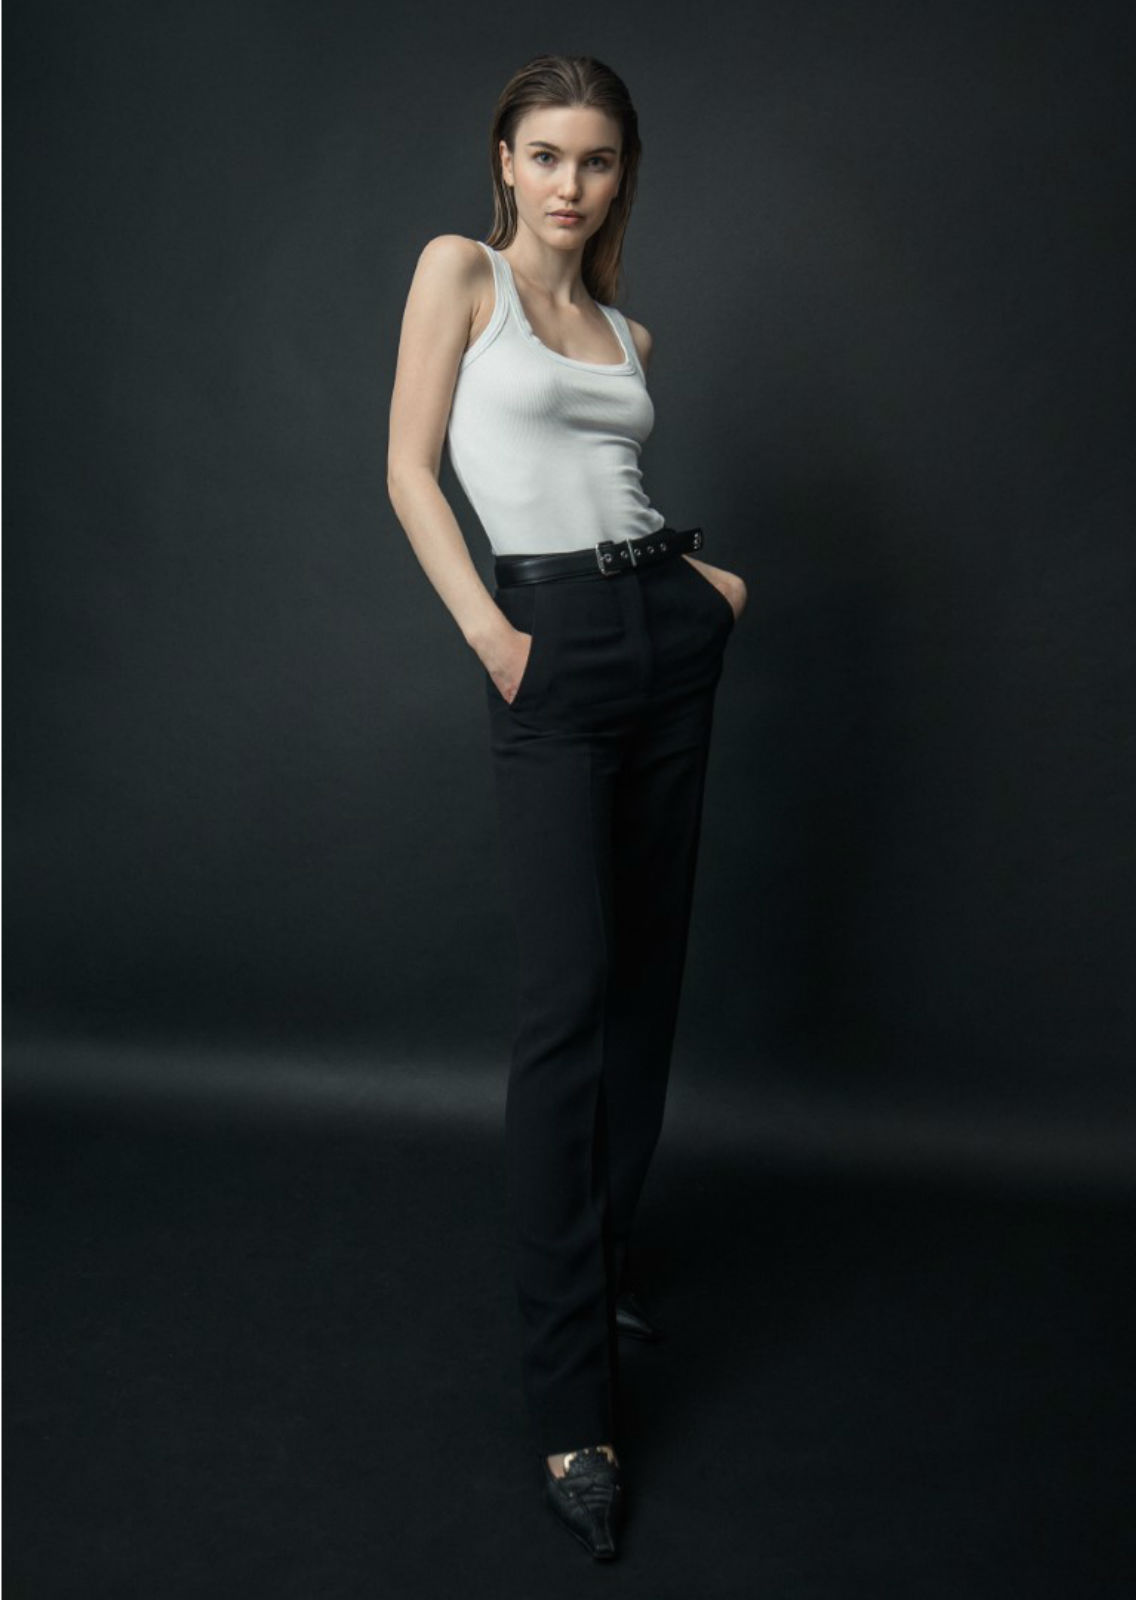 LISA MILLER. Carmen Duran Model Agency.